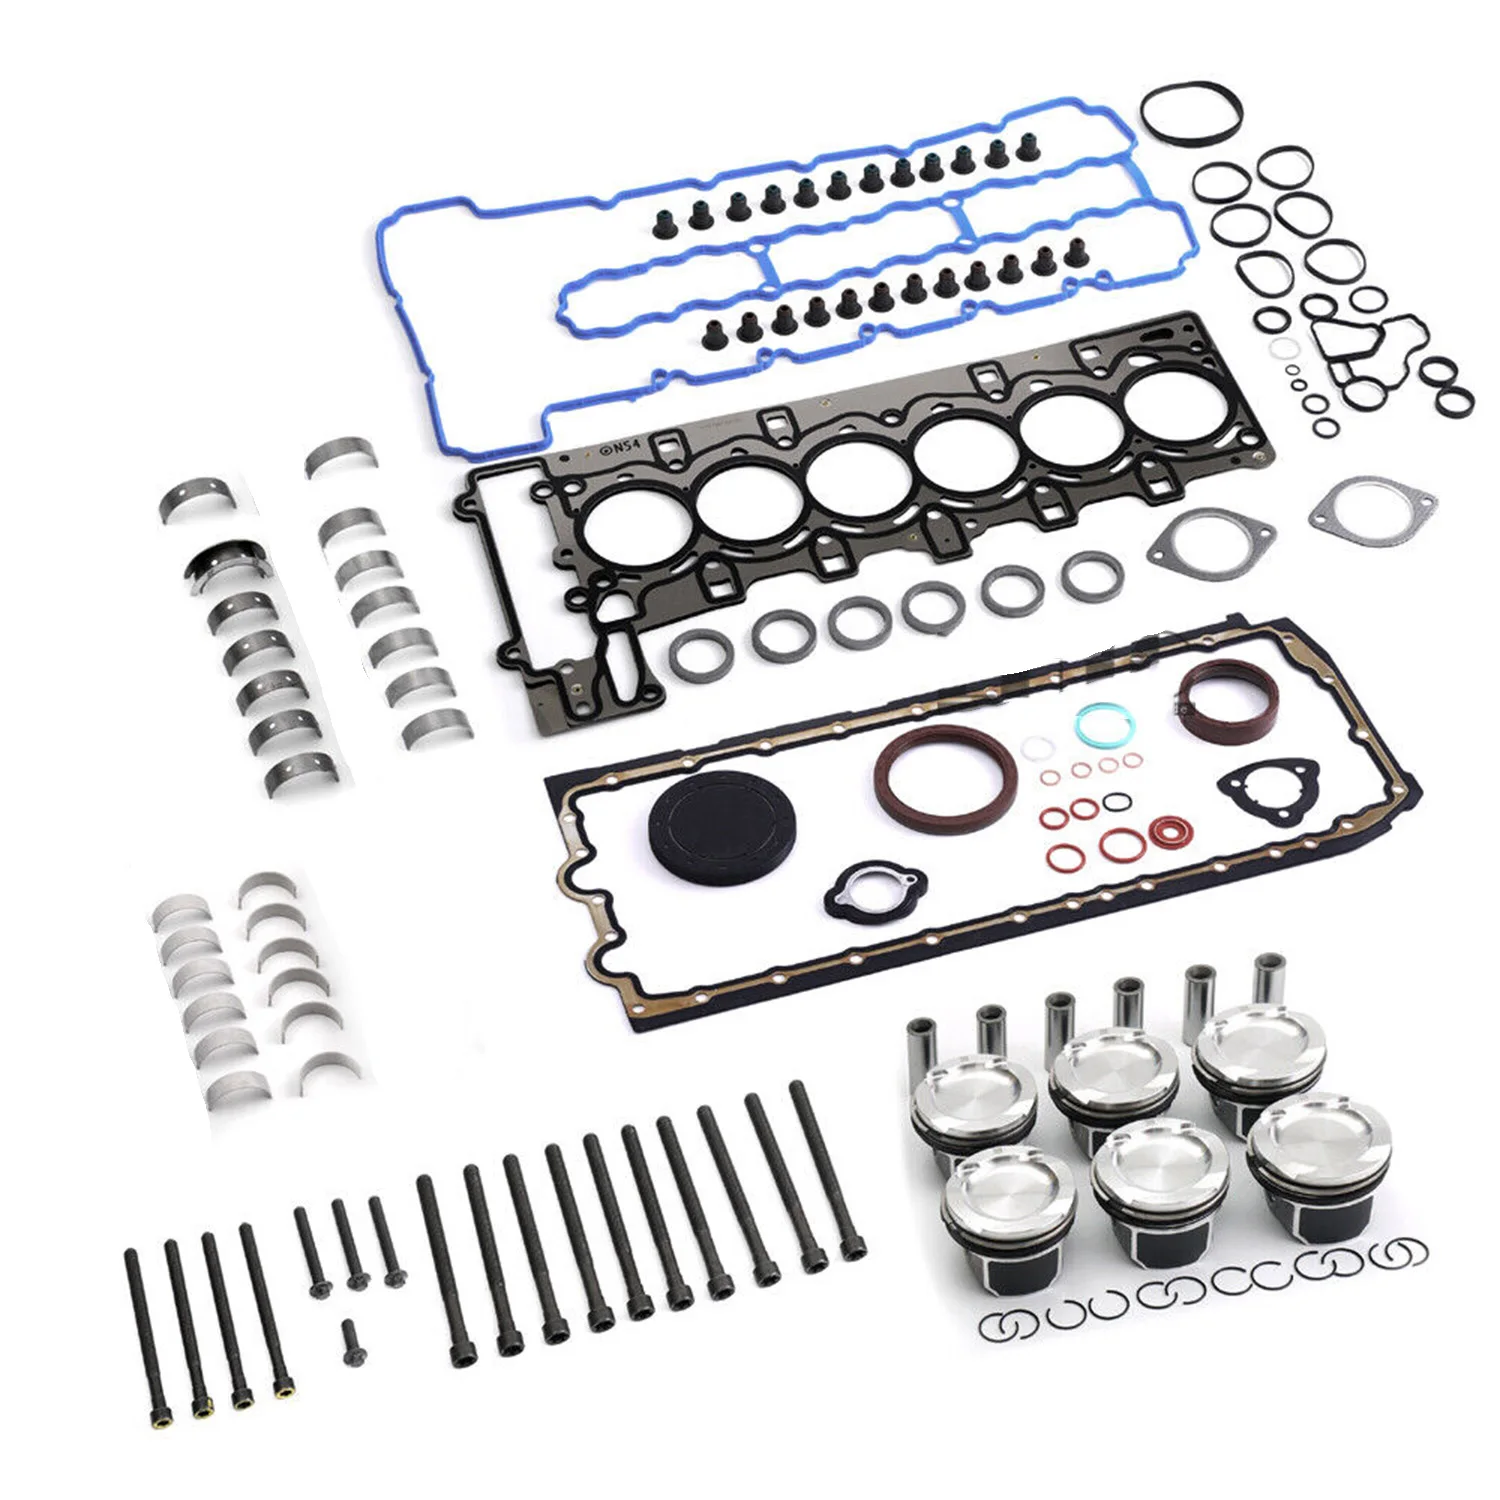 

1set 11257610295 11257577586 Engine Rebuilding Bearings Pistons Kit For BMW 335i E90 E92 E88 E60 E71 F02 N54 3.0